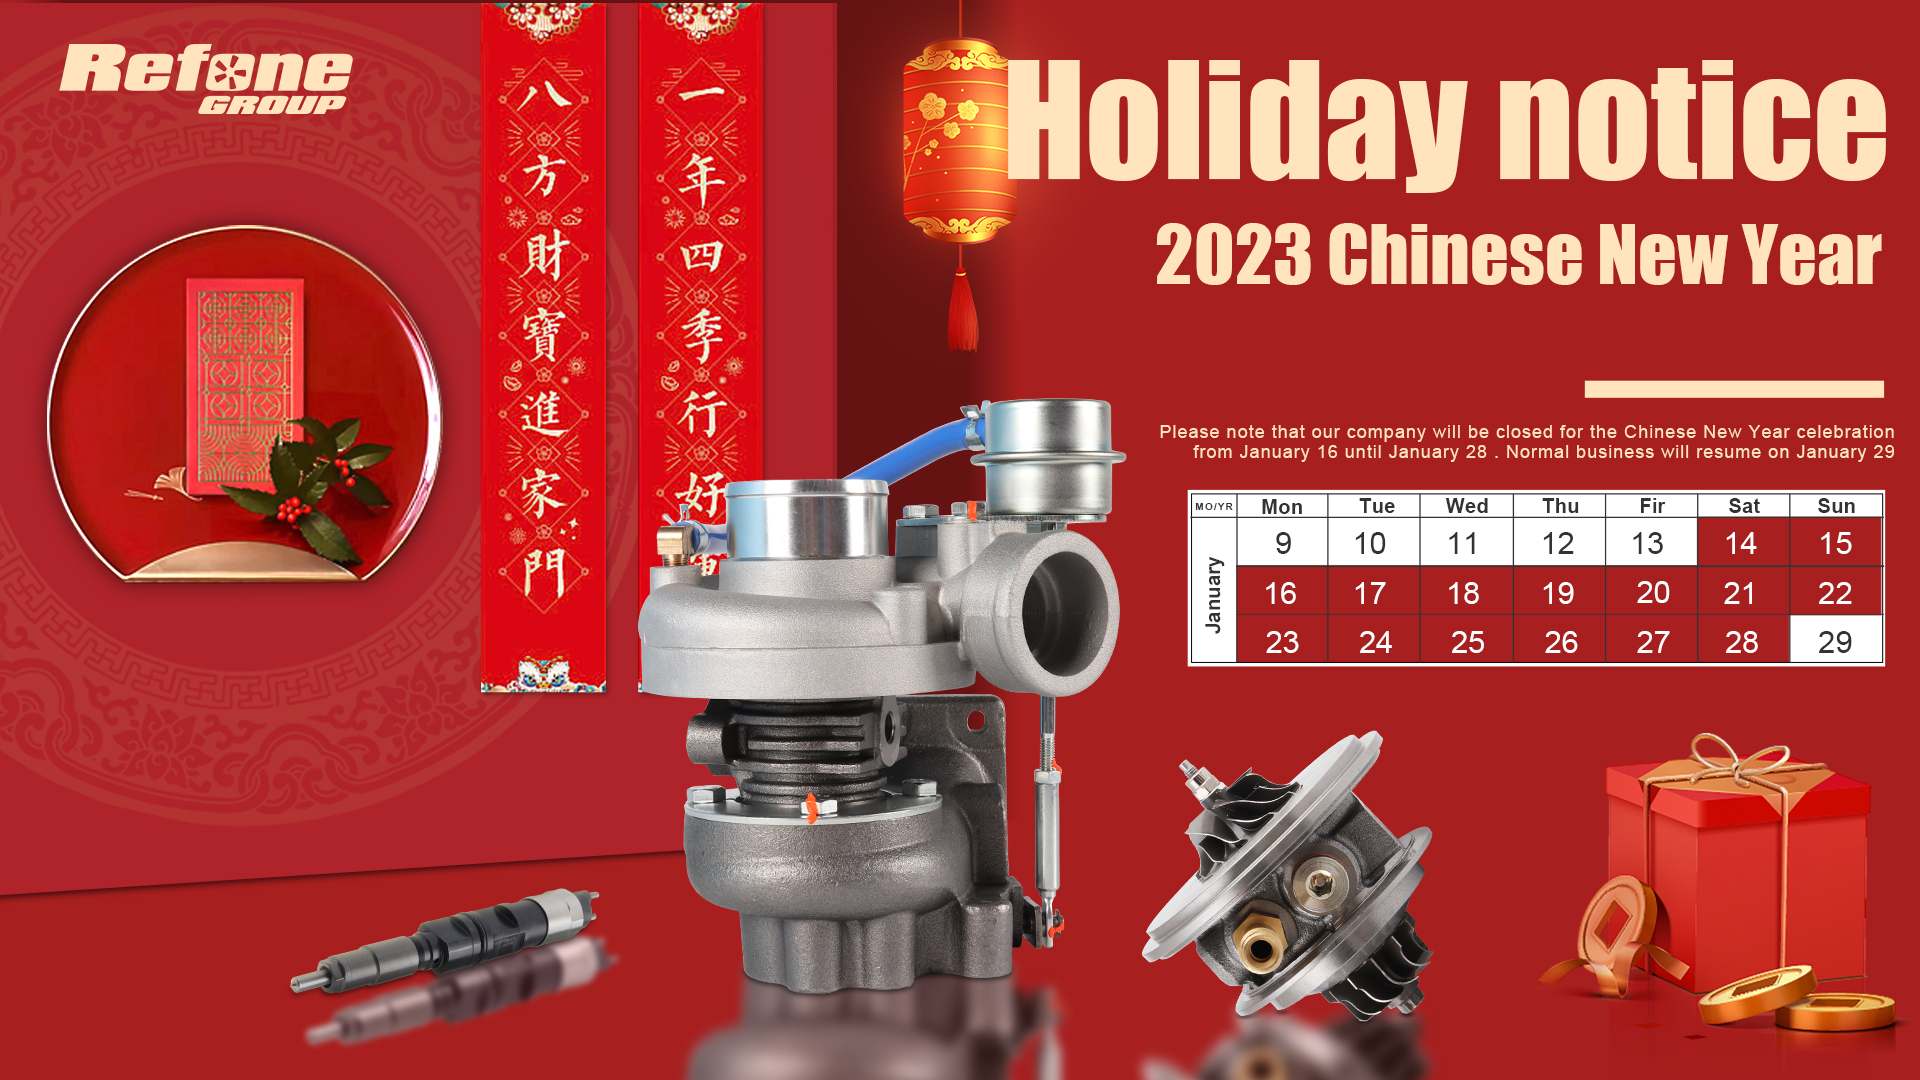 إشعار عطلة - 2023 رأس السنة الصينية الجديدة